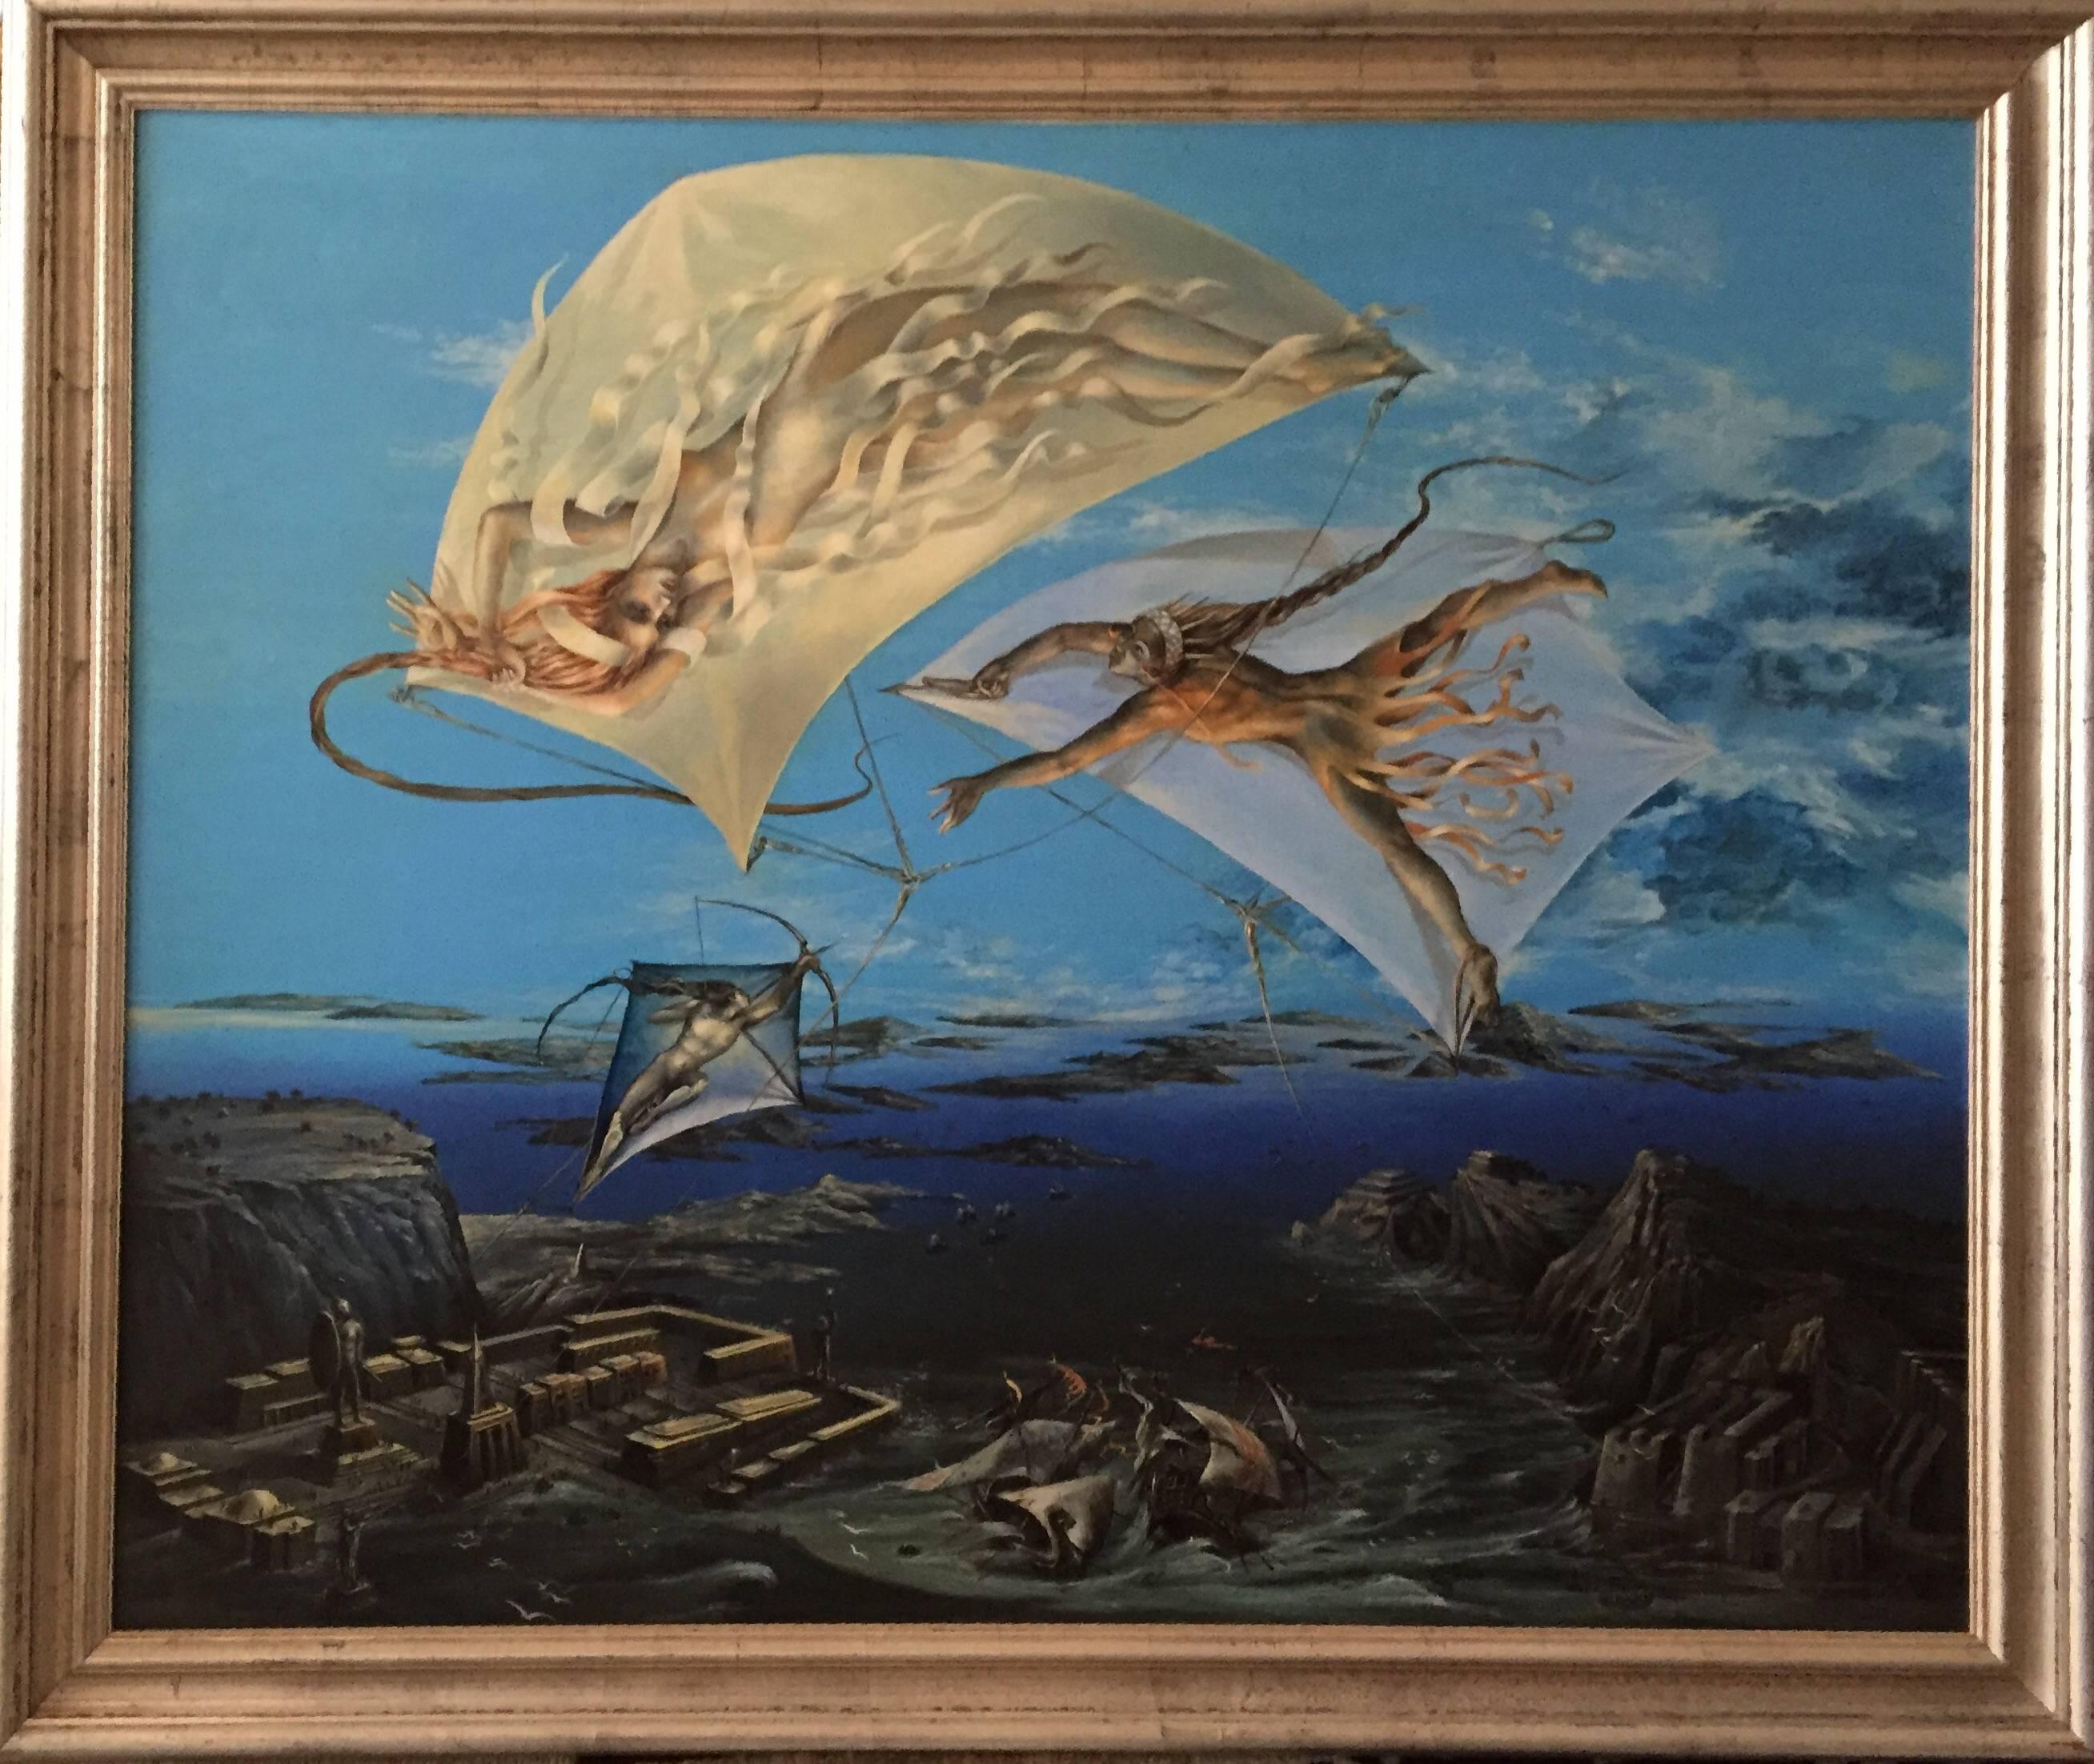 Atlantis, großes surrealistisches Ölgemälde. Wiener Fantastischer Realismus – Painting von Peter Kolin